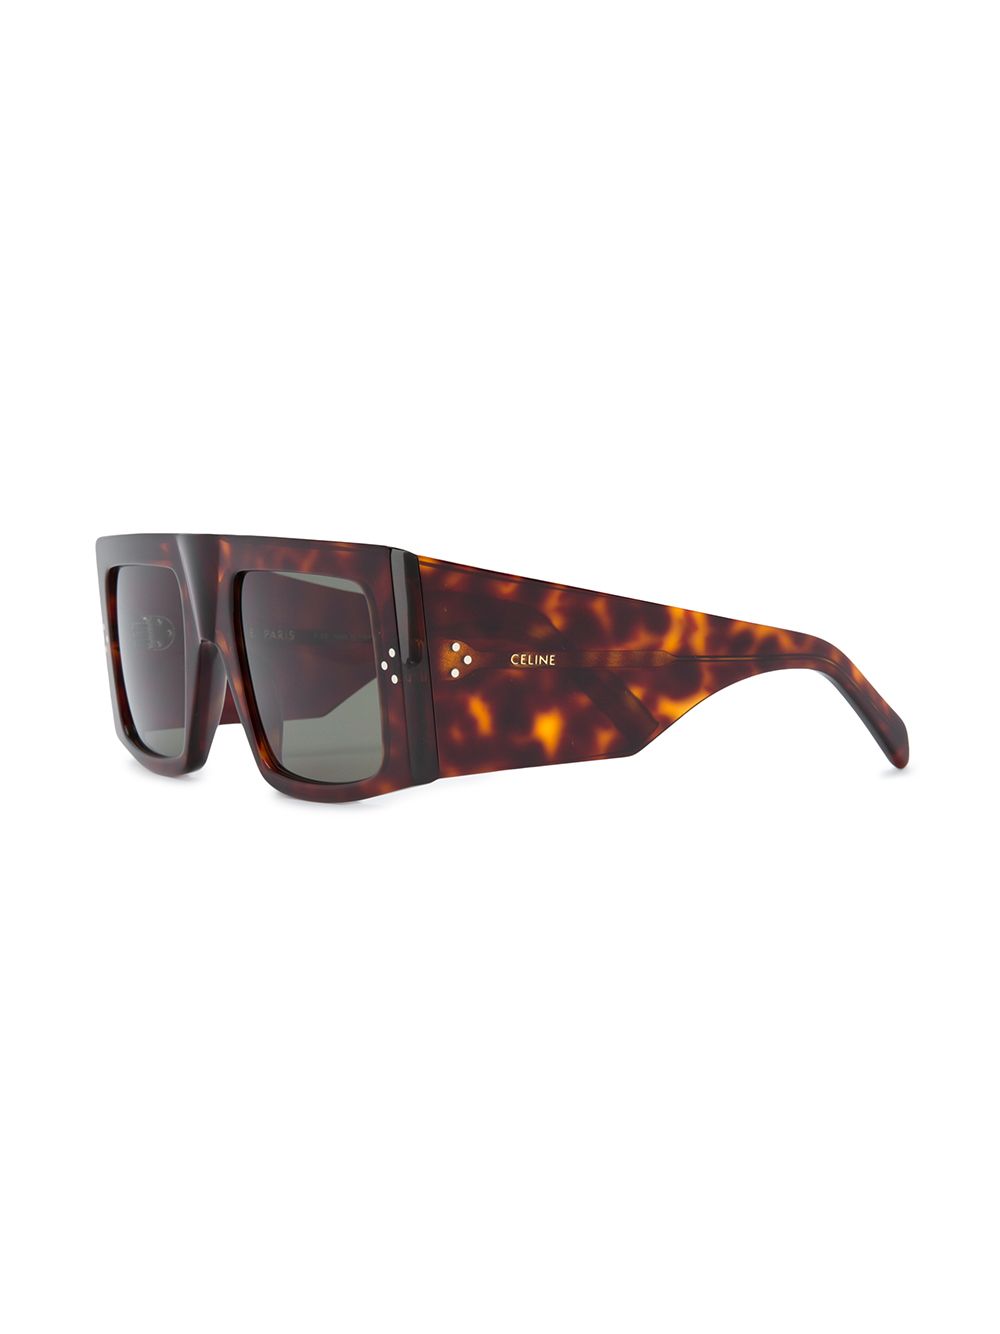 фото Celine eyewear солнцезащитные очки черепаховой расцветки